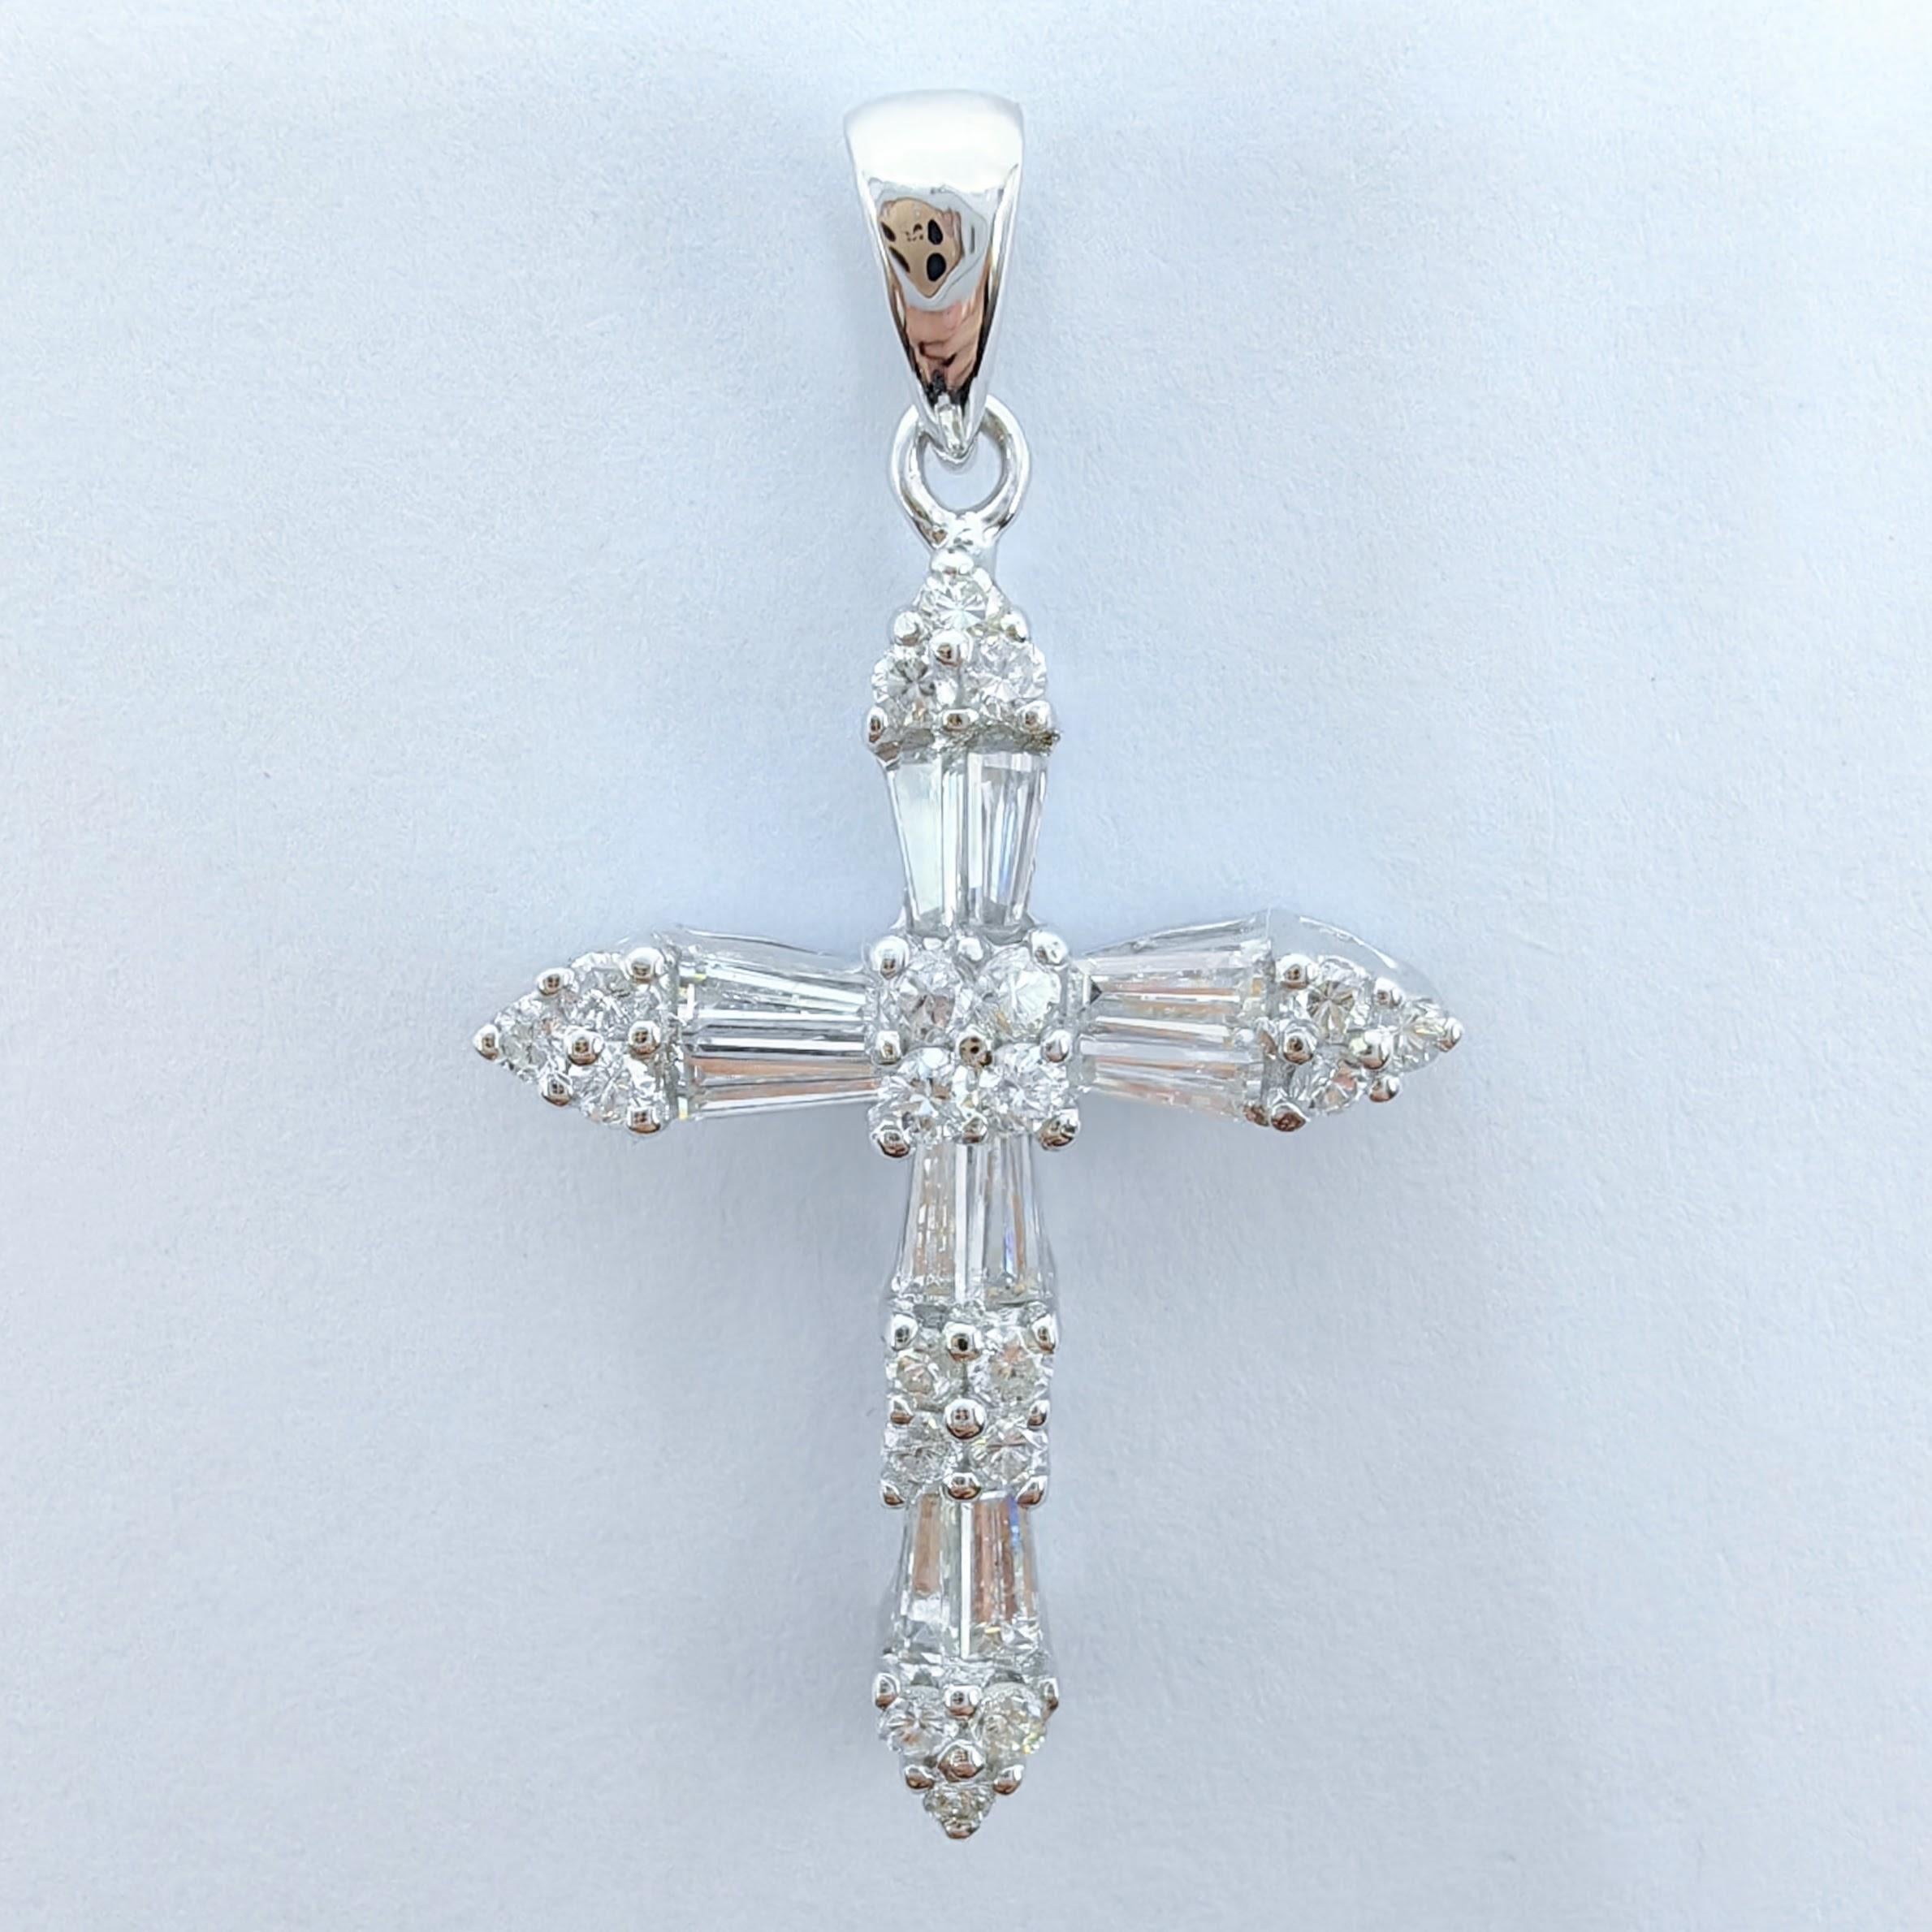 Voici notre pendentif croix classique en diamant taille baguette et ronde, un symbole intemporel de foi et d'élégance. Fabriqué en or blanc 18 carats, ce pendentif exquis présente un superbe arrangement de diamants qui accentuent magnifiquement le